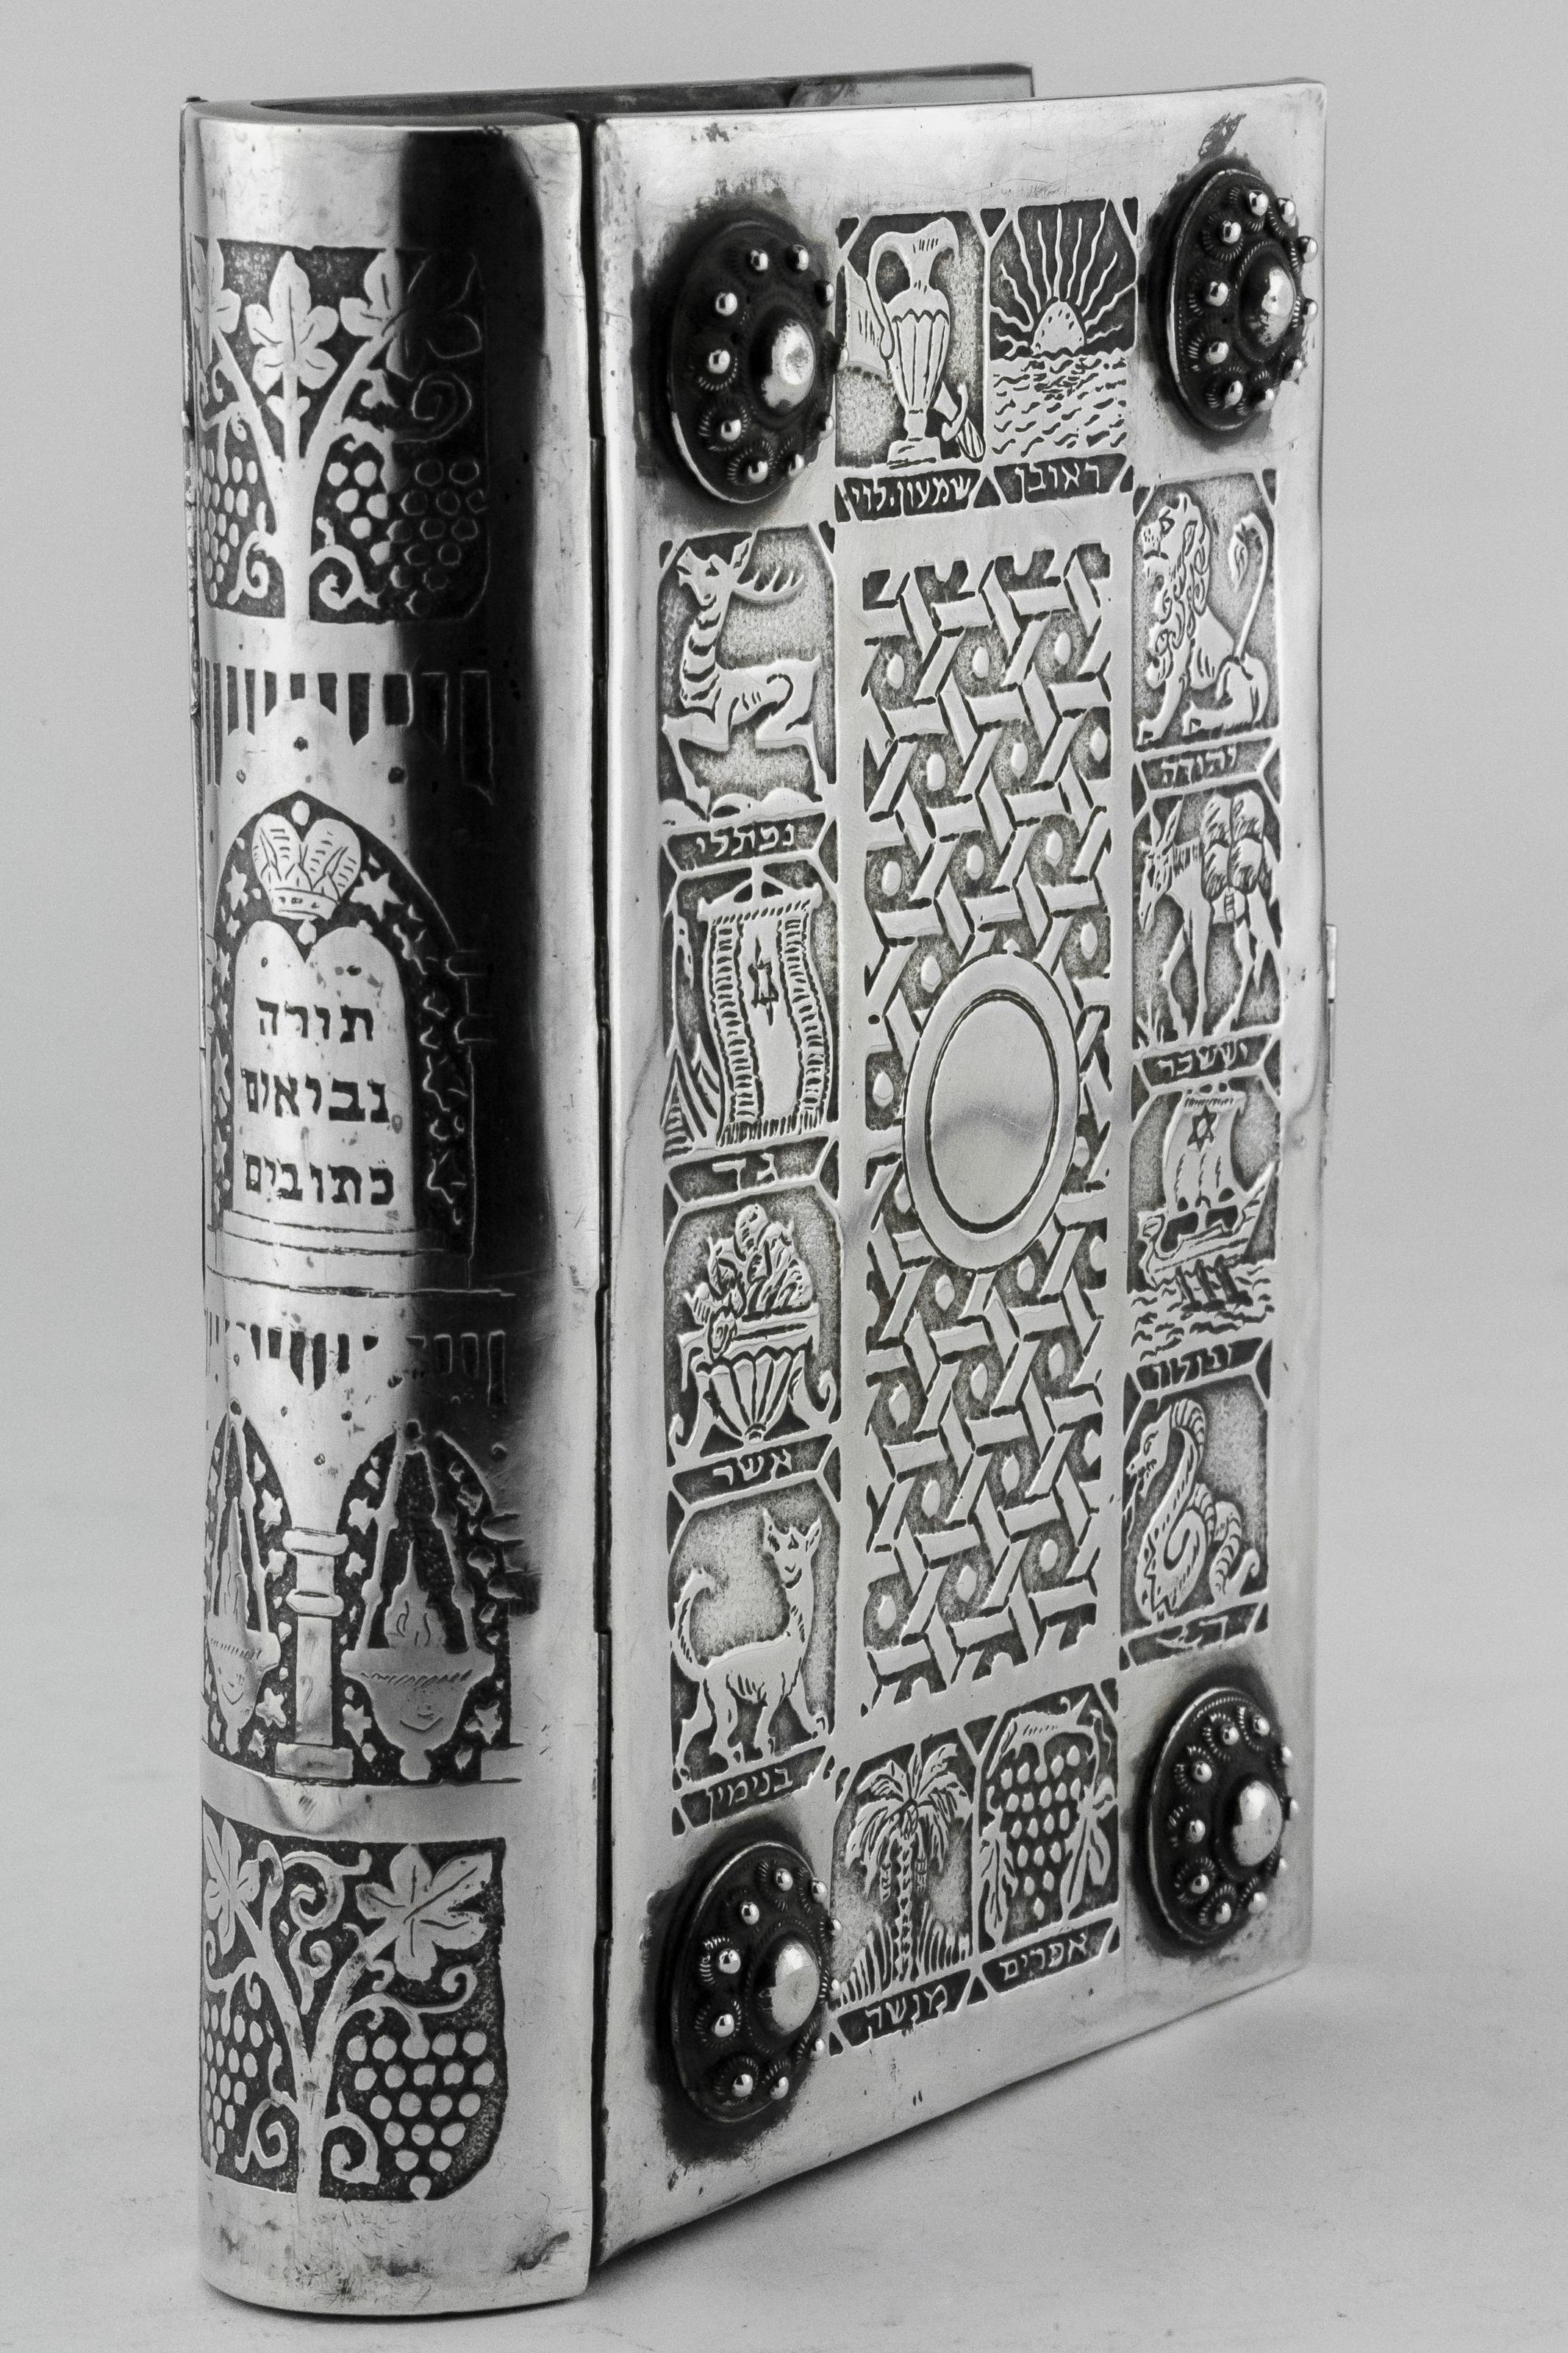 Israeli Mid-20th Century Silver Book Binding by Bezalel School Jerusalem